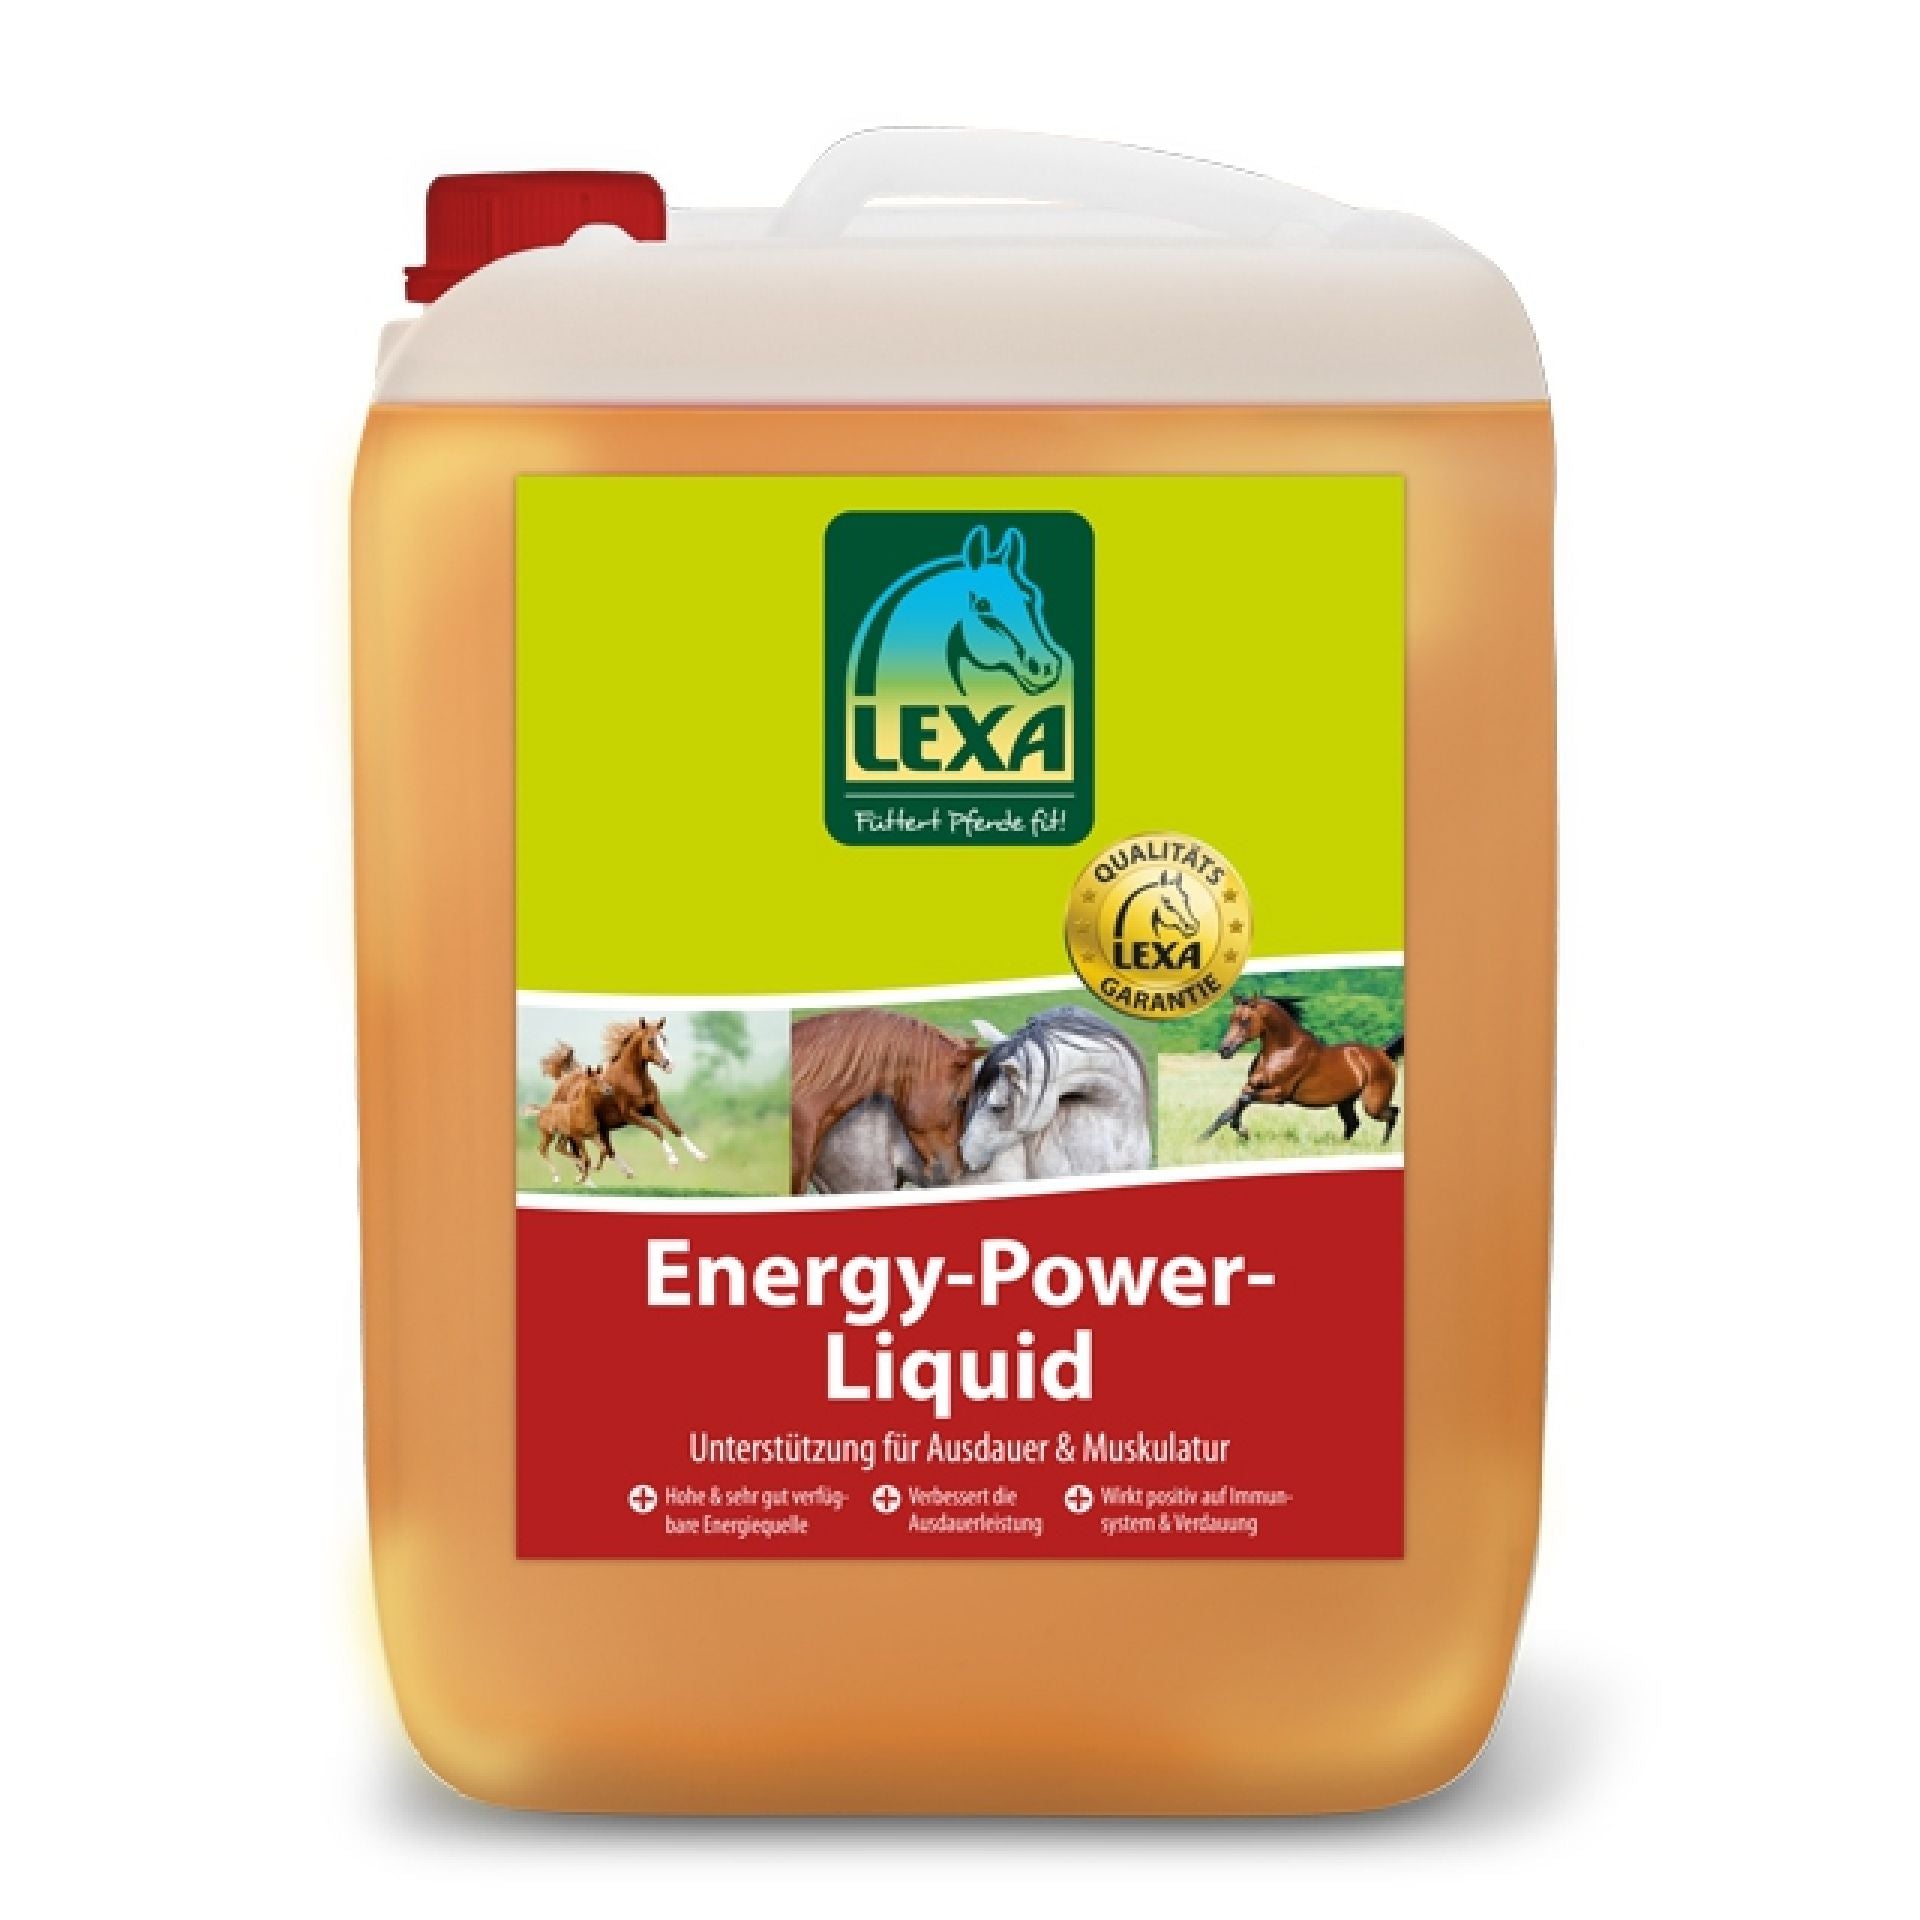 Energy-Power-Liquid